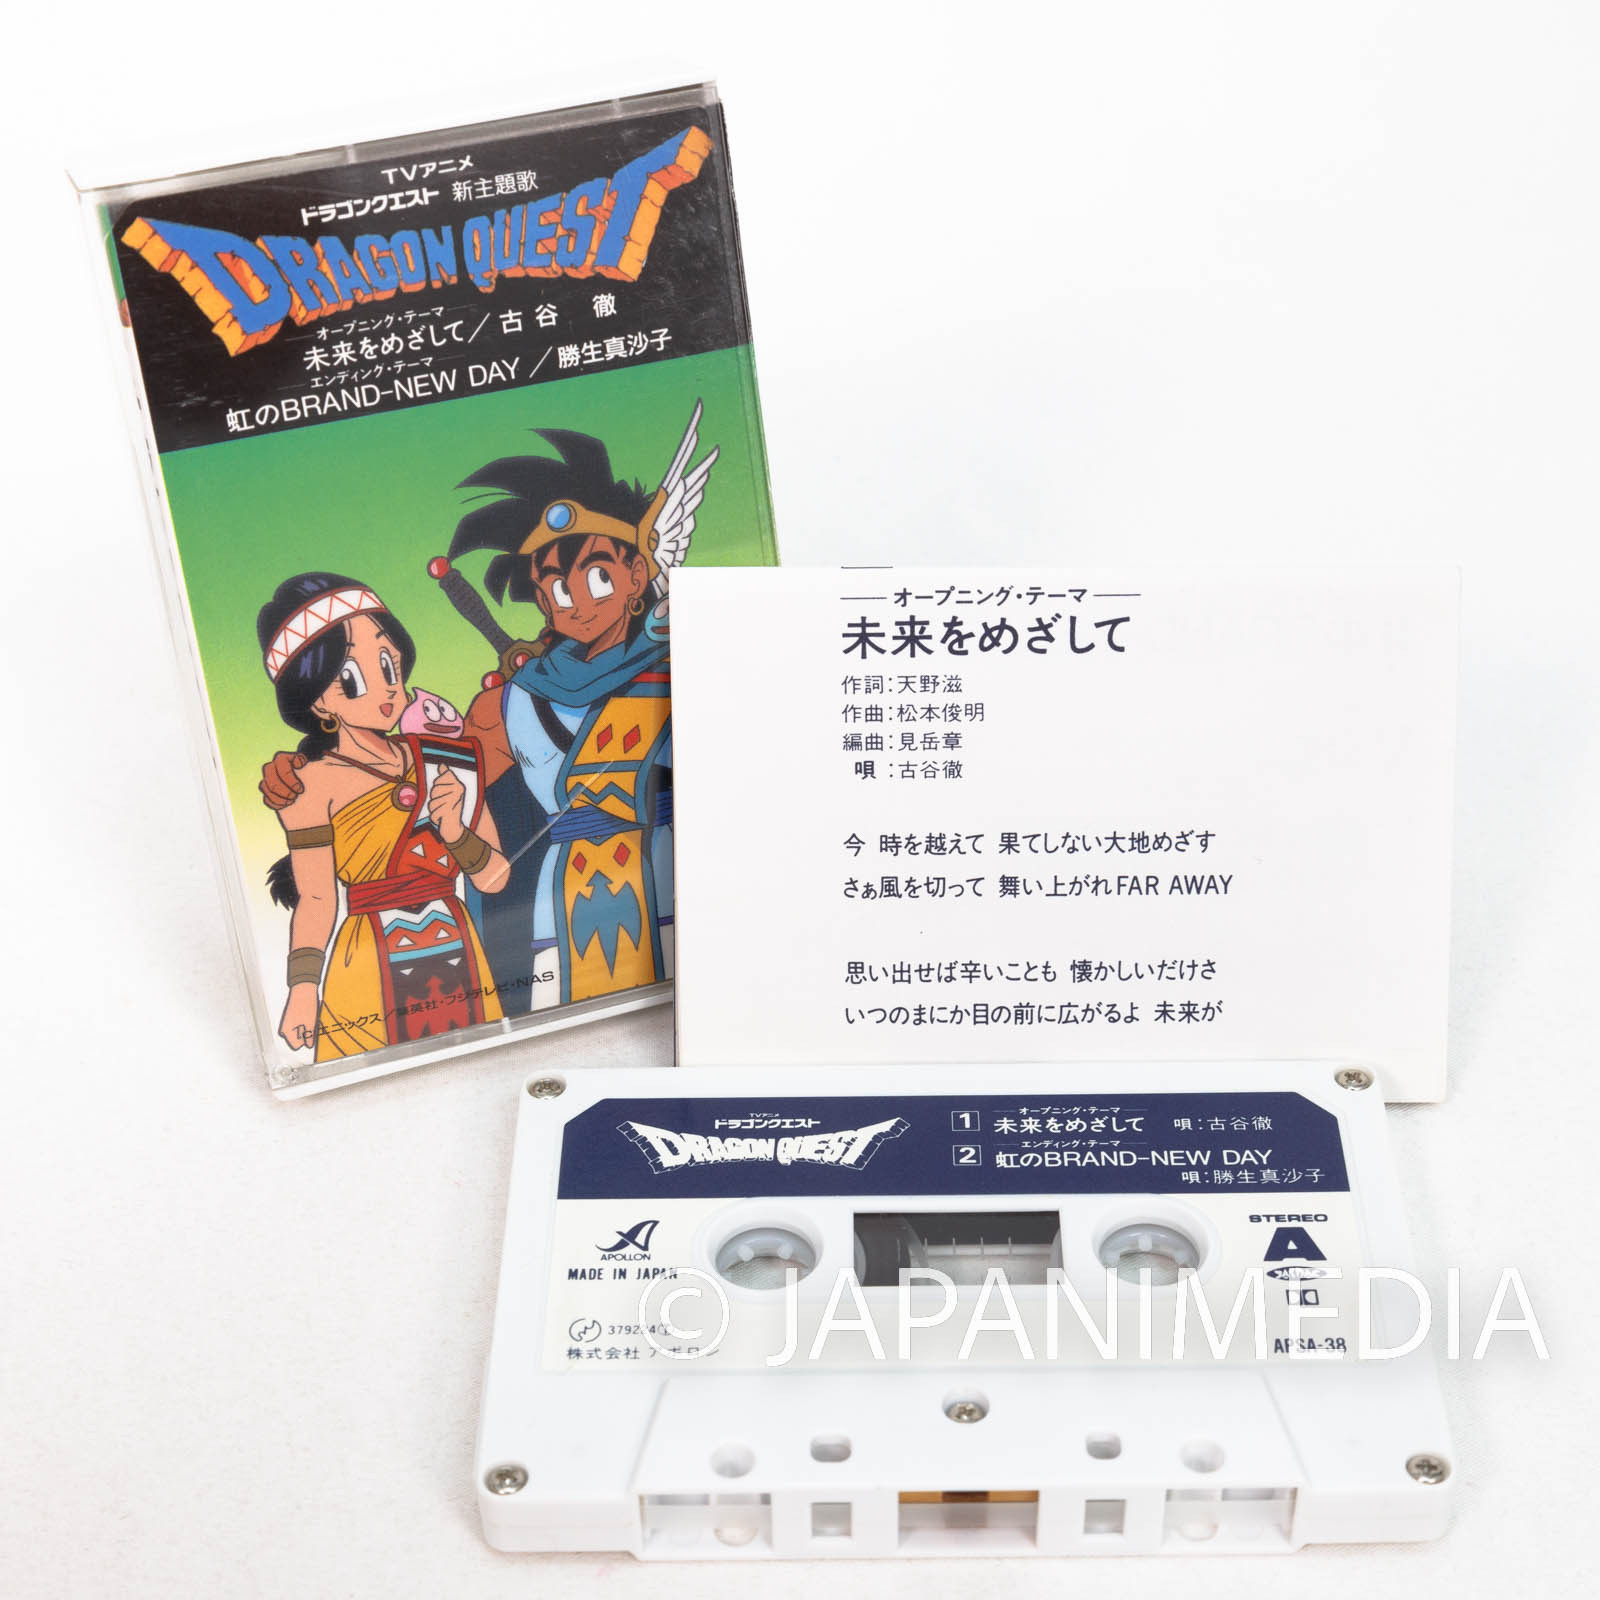 Sailor Moon CASSETTE TAPE old junk Japanese Anime song #11 | eBay